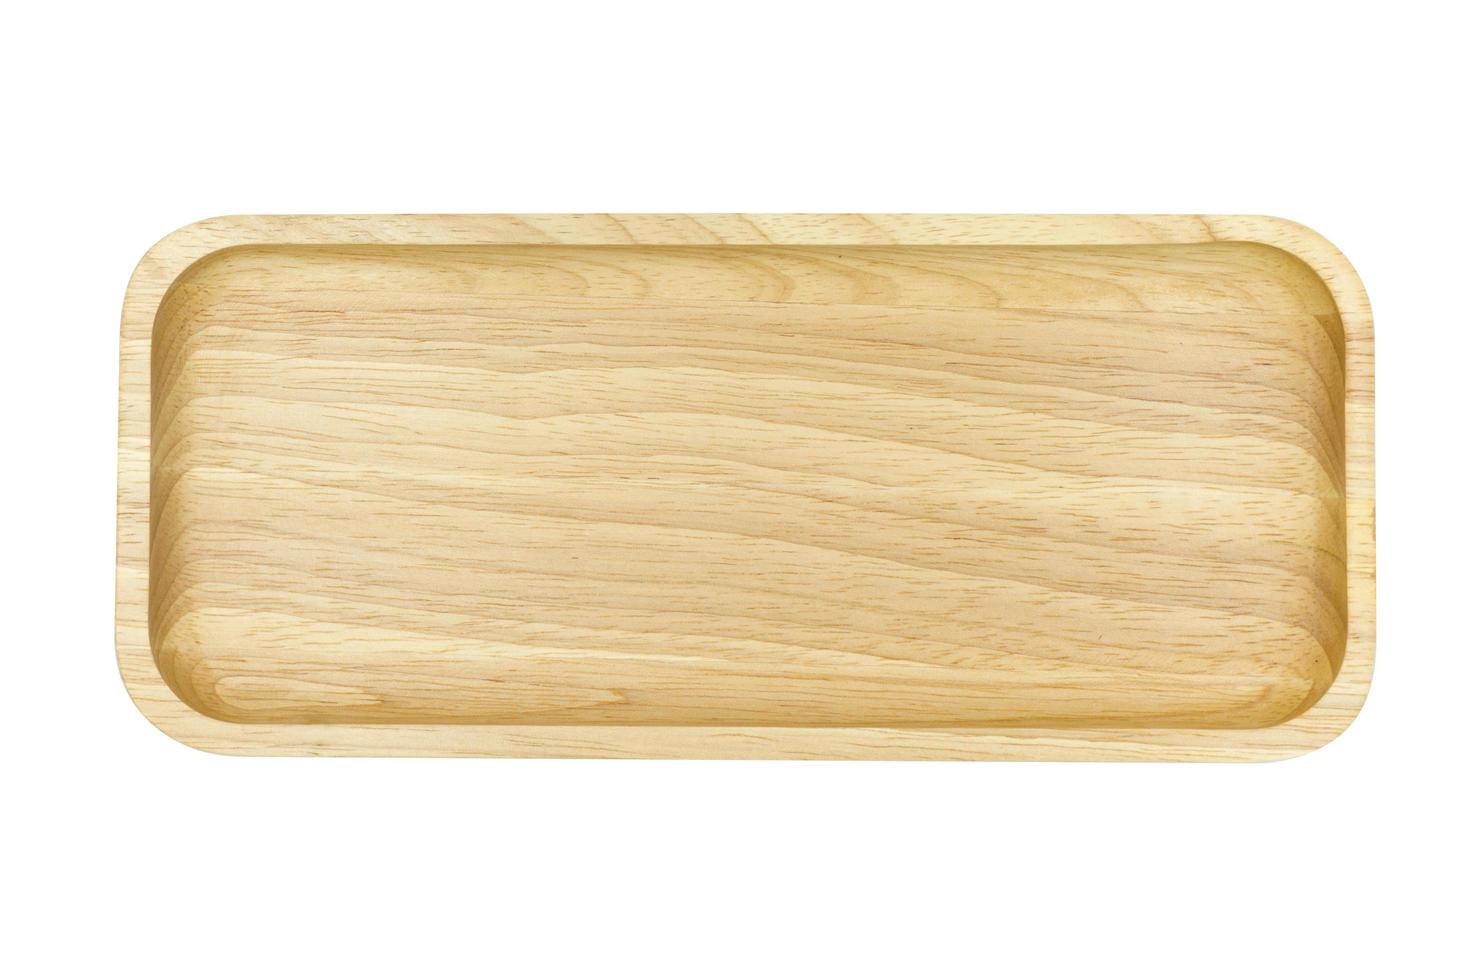 plaque en bois isolé sur fond blanc photo